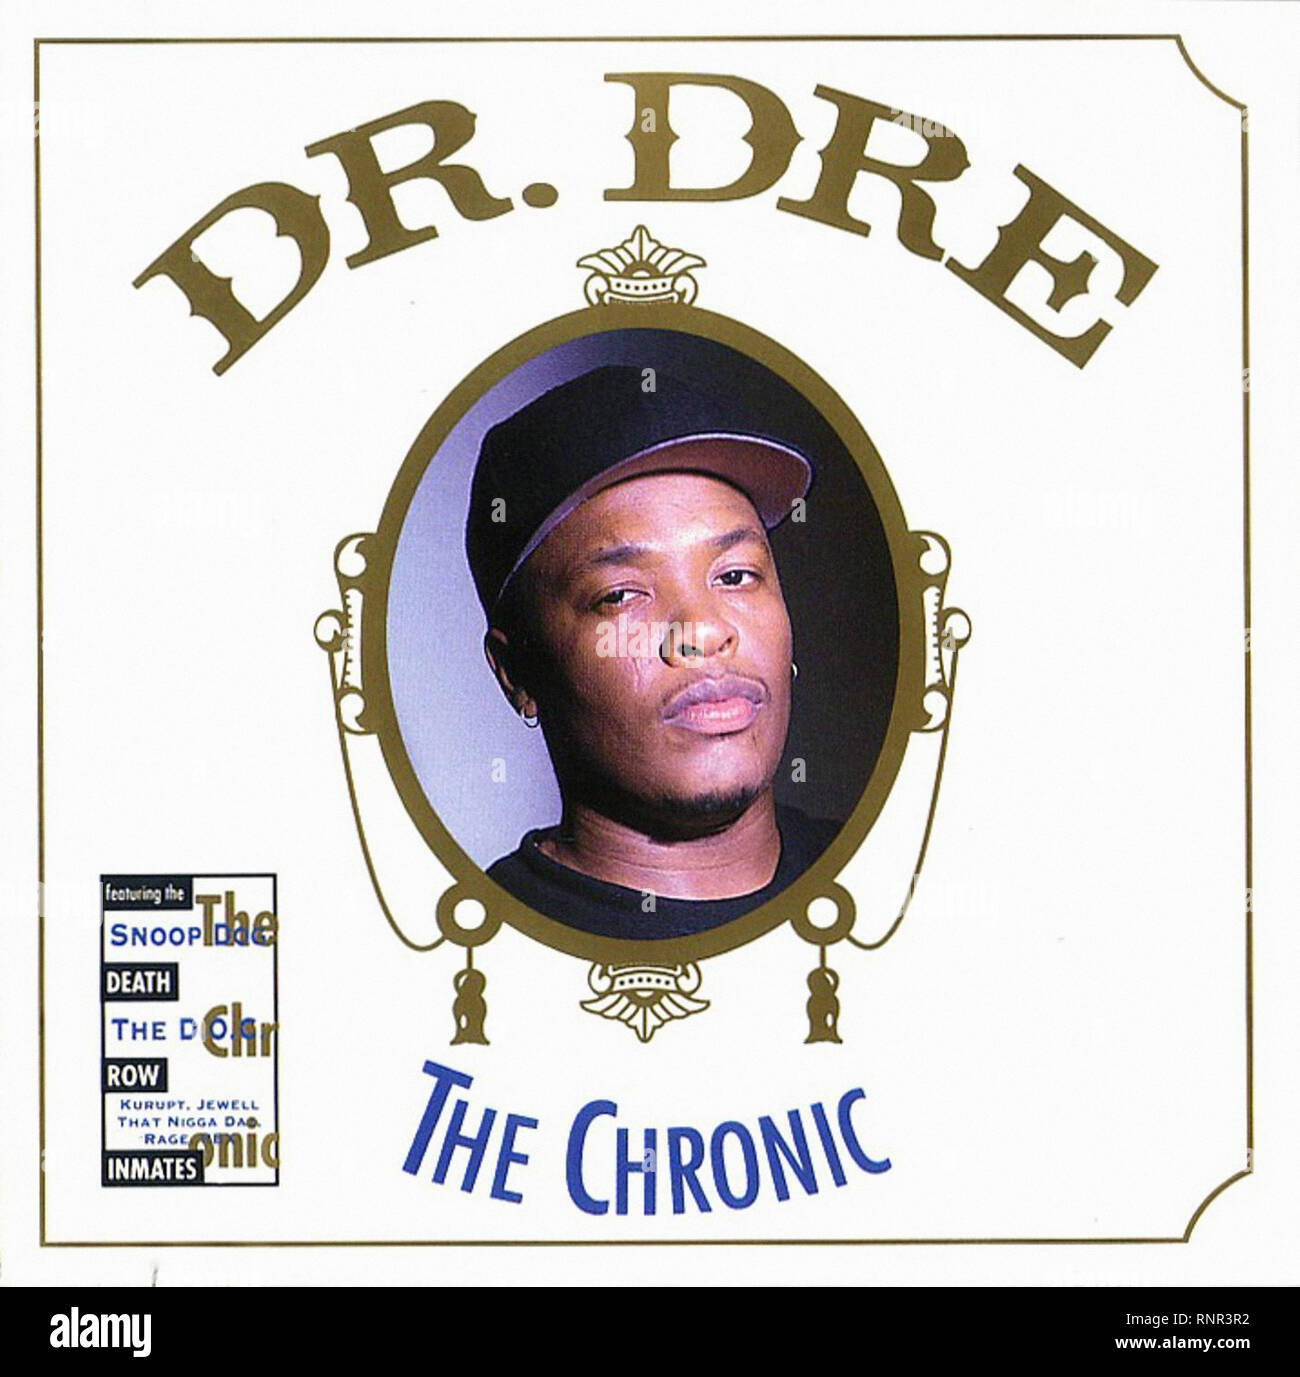 The chronic dr dre full album download - poolbpo